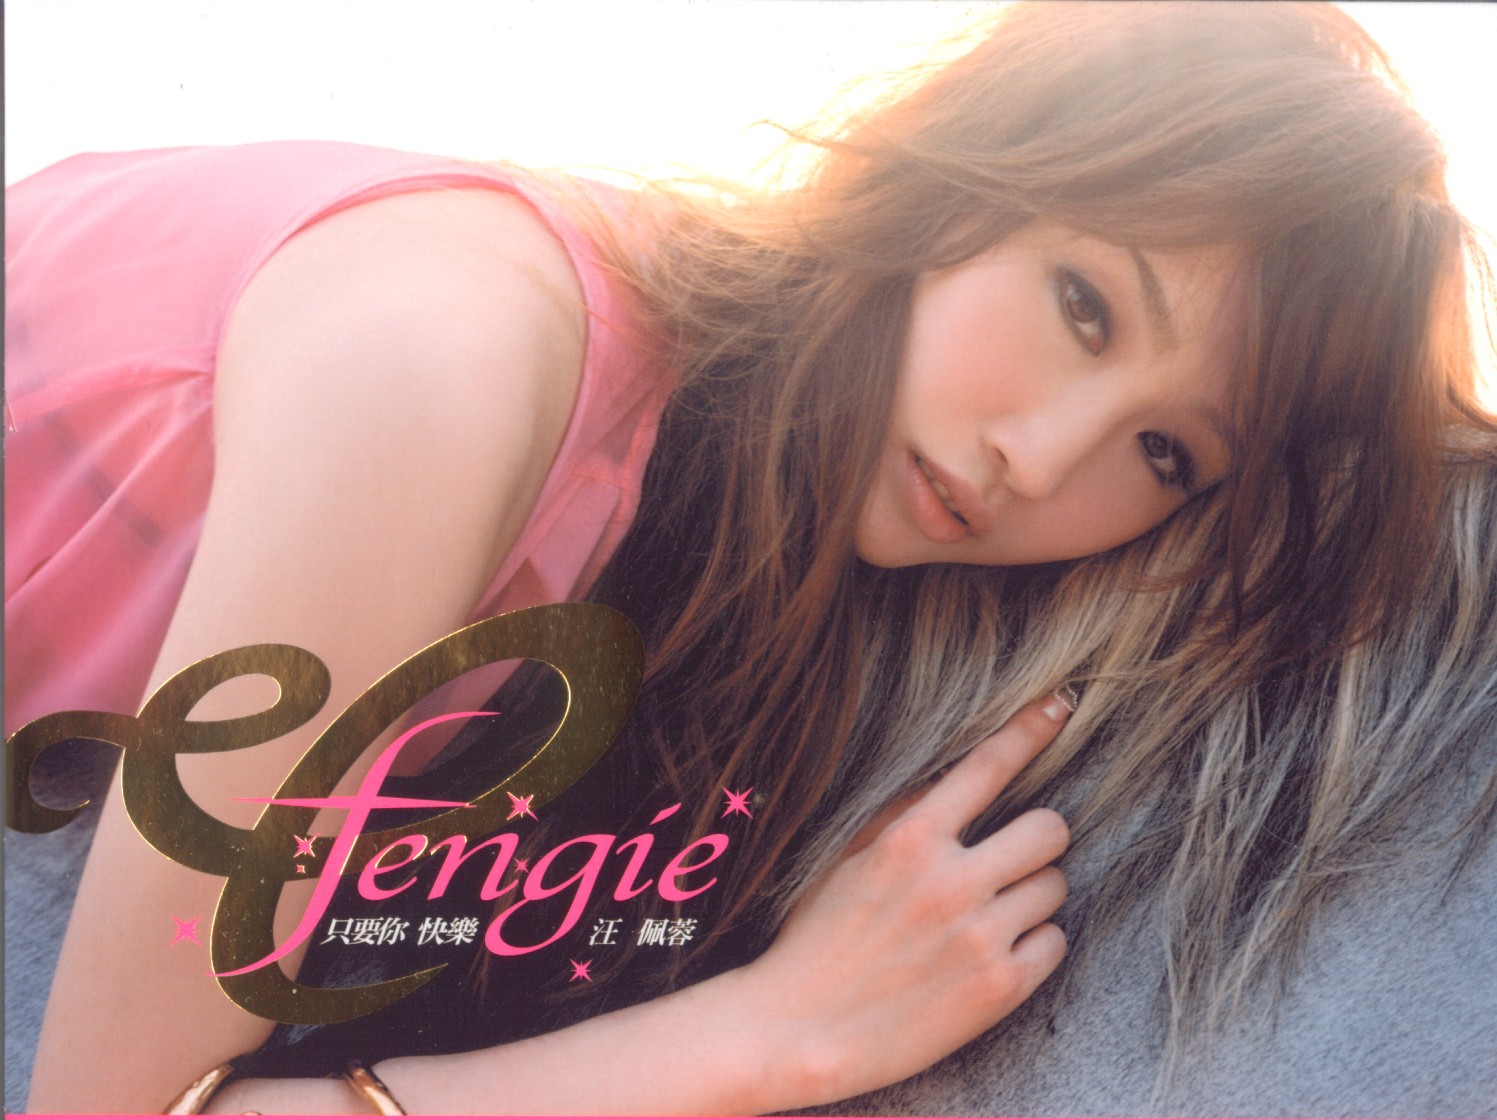 00-frankie_wang_-_fengie-cpop-2005-msc-cover.jpg